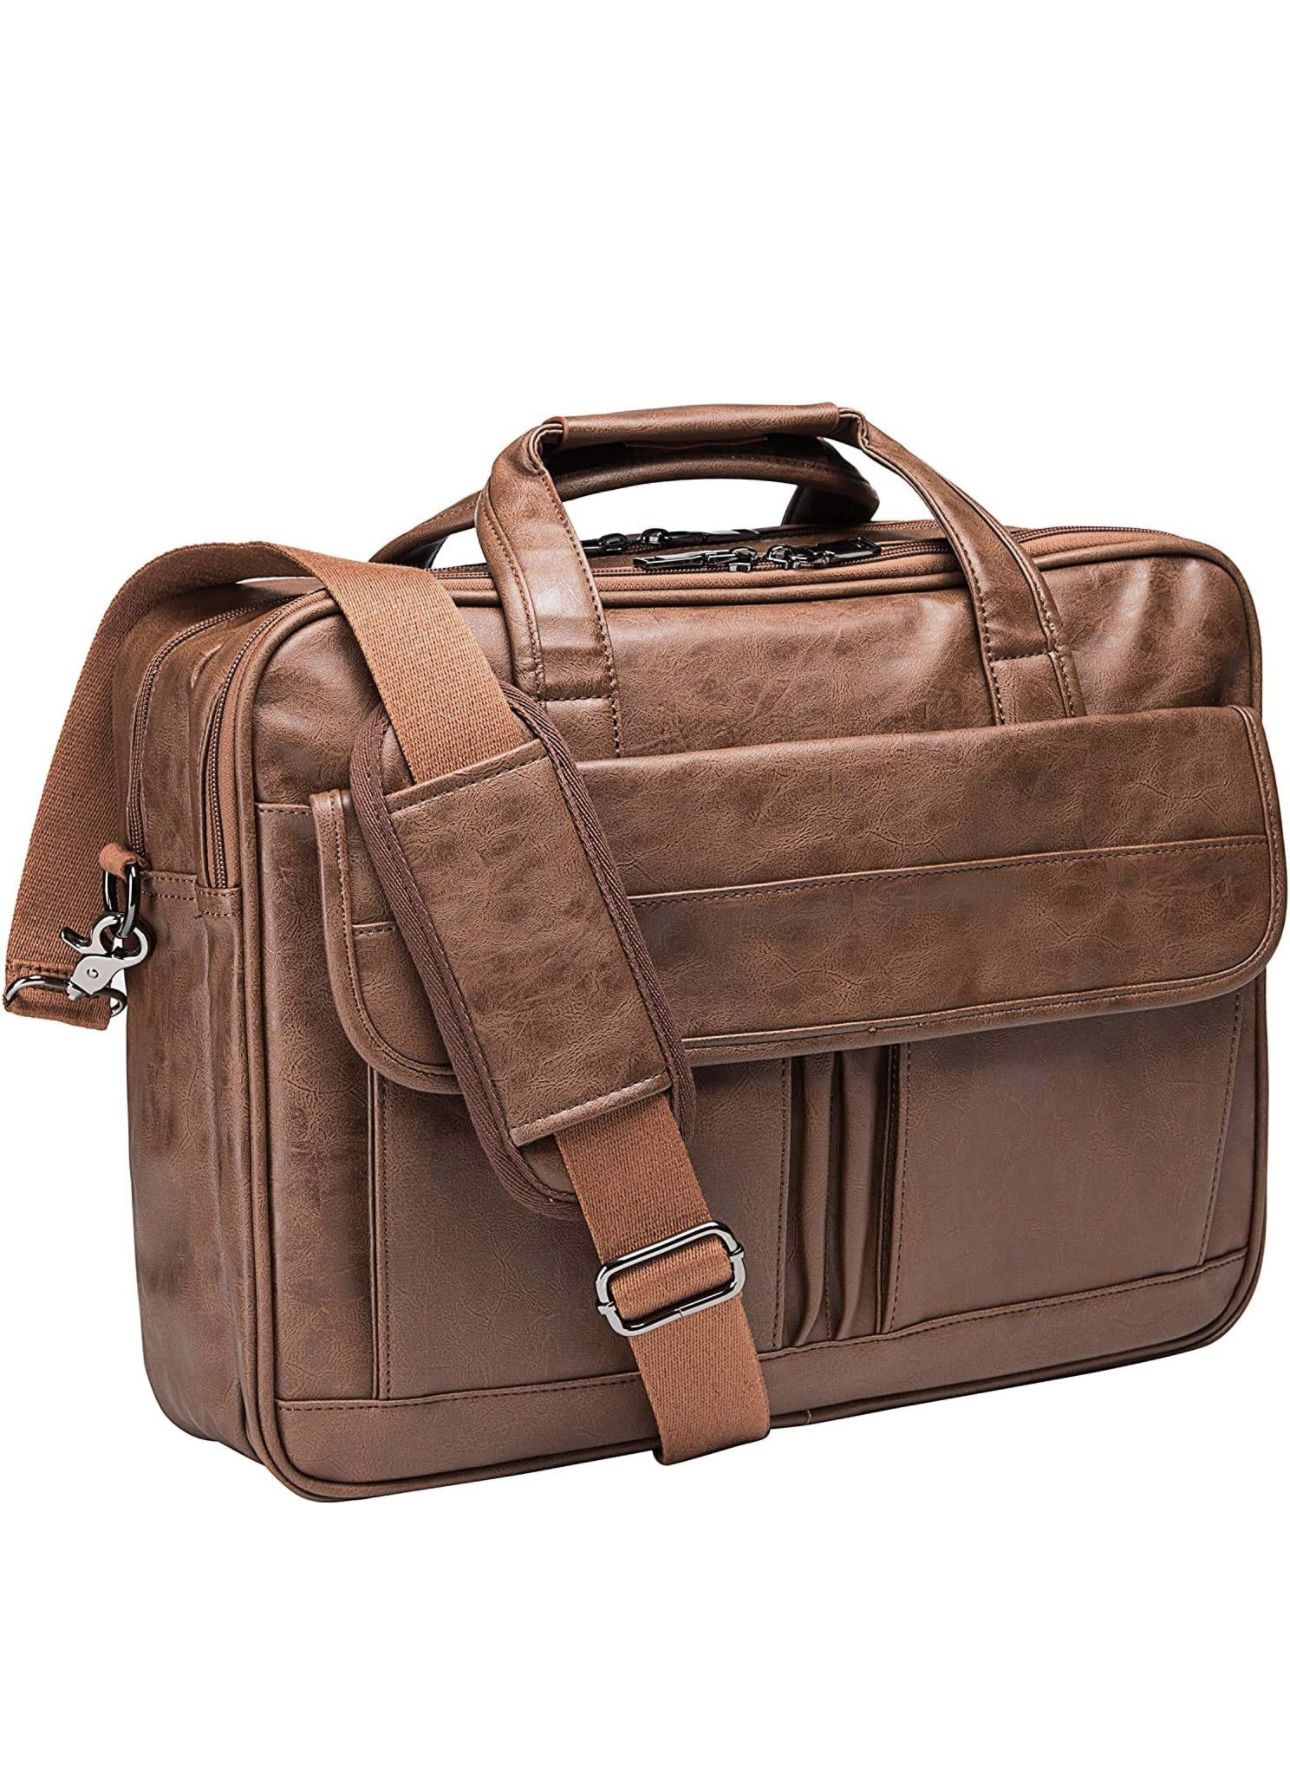 seyfocnia Mens Laptop Bag,17.3 Inch PU Leather Messenger Bag Water Resistant Business Travel Briefcase, Work Computer Bag Satchel Bag Husband（Brown）